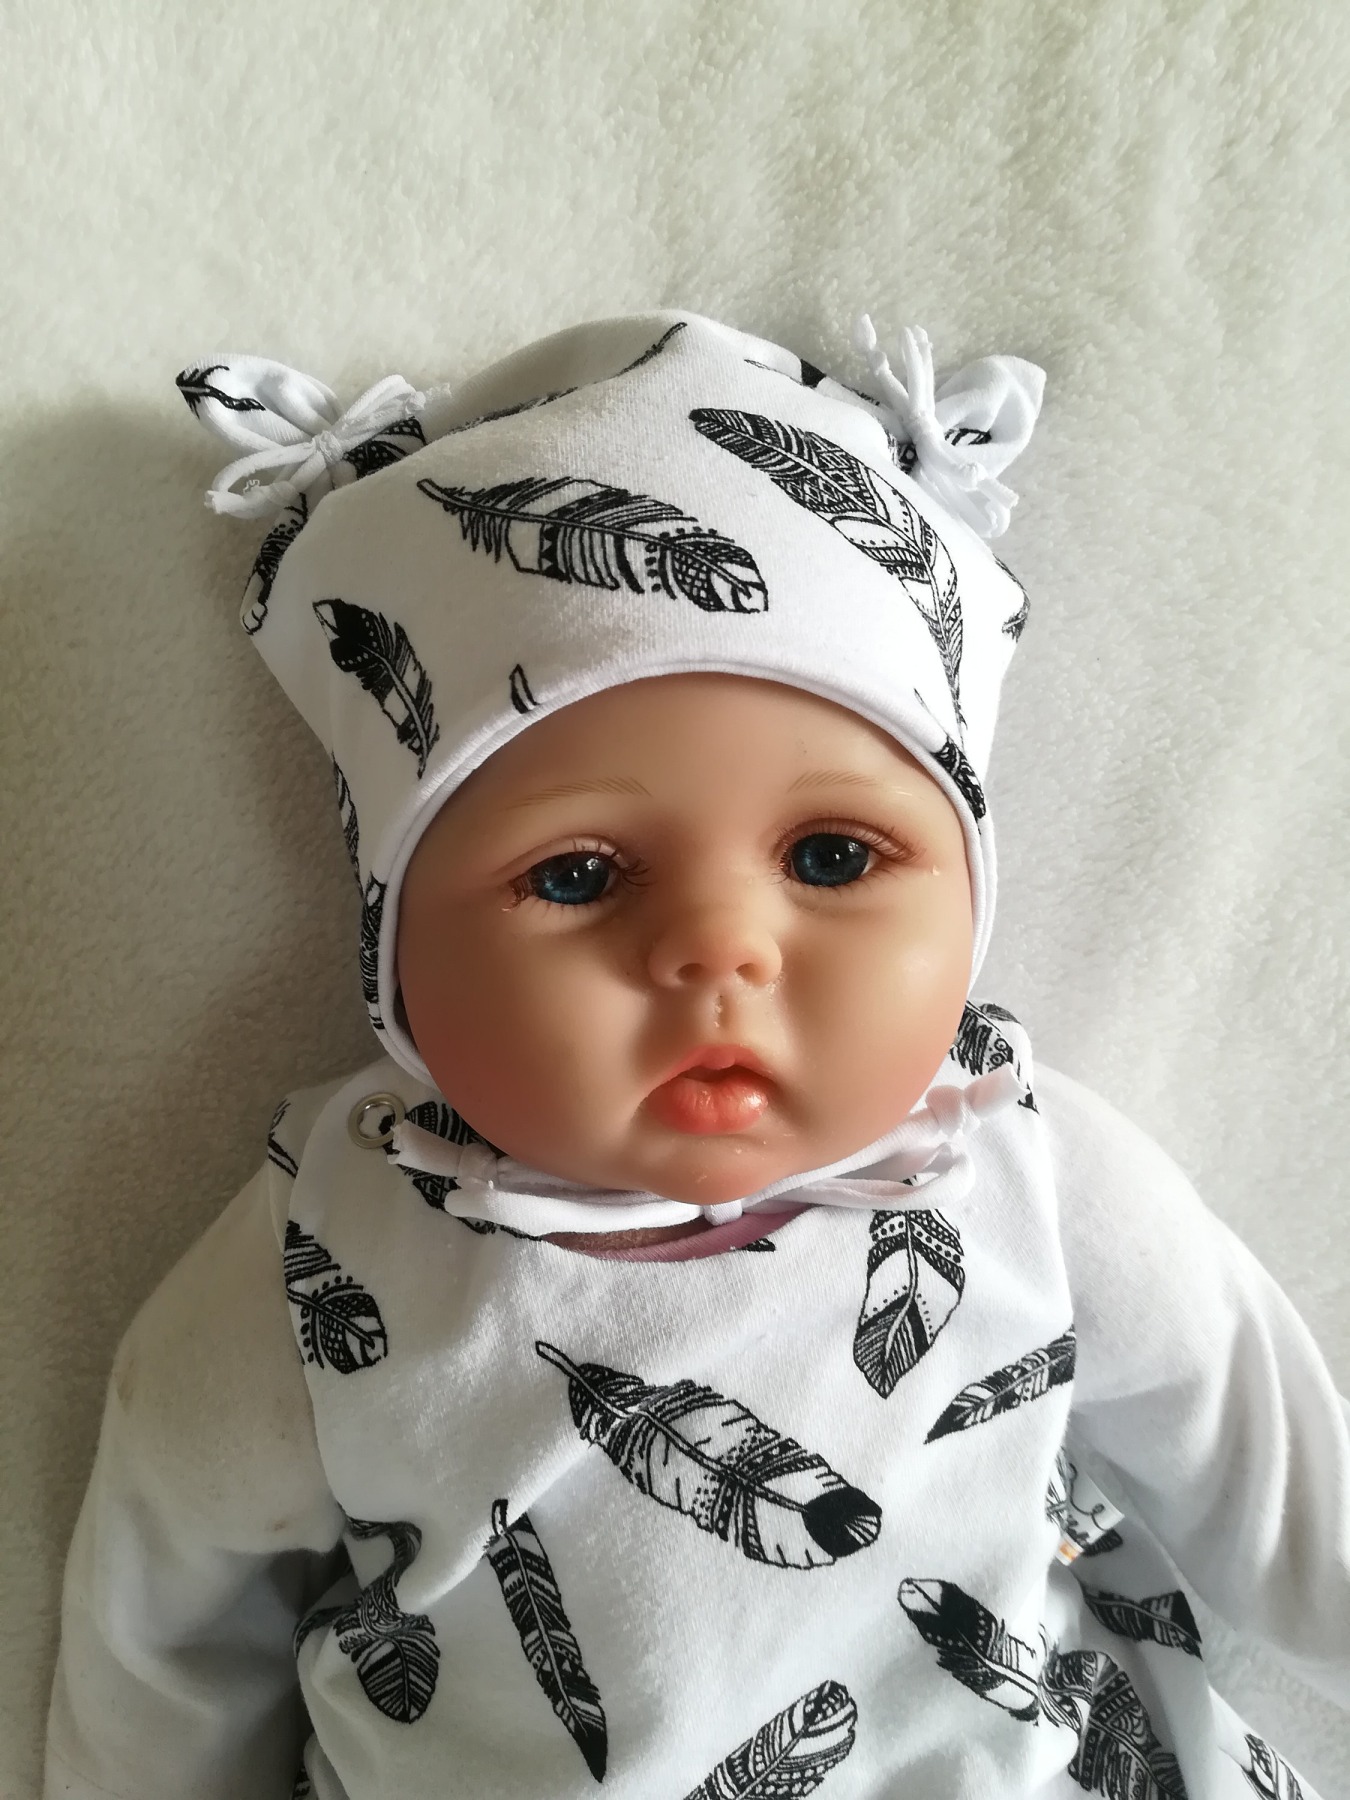 Baby Kind Ohrenmütze mit oder ohne Bindebänder 35 - 55cm Kopfumfang Sterne türkis petrol Babymütze Bindemütze Kindermütze 3